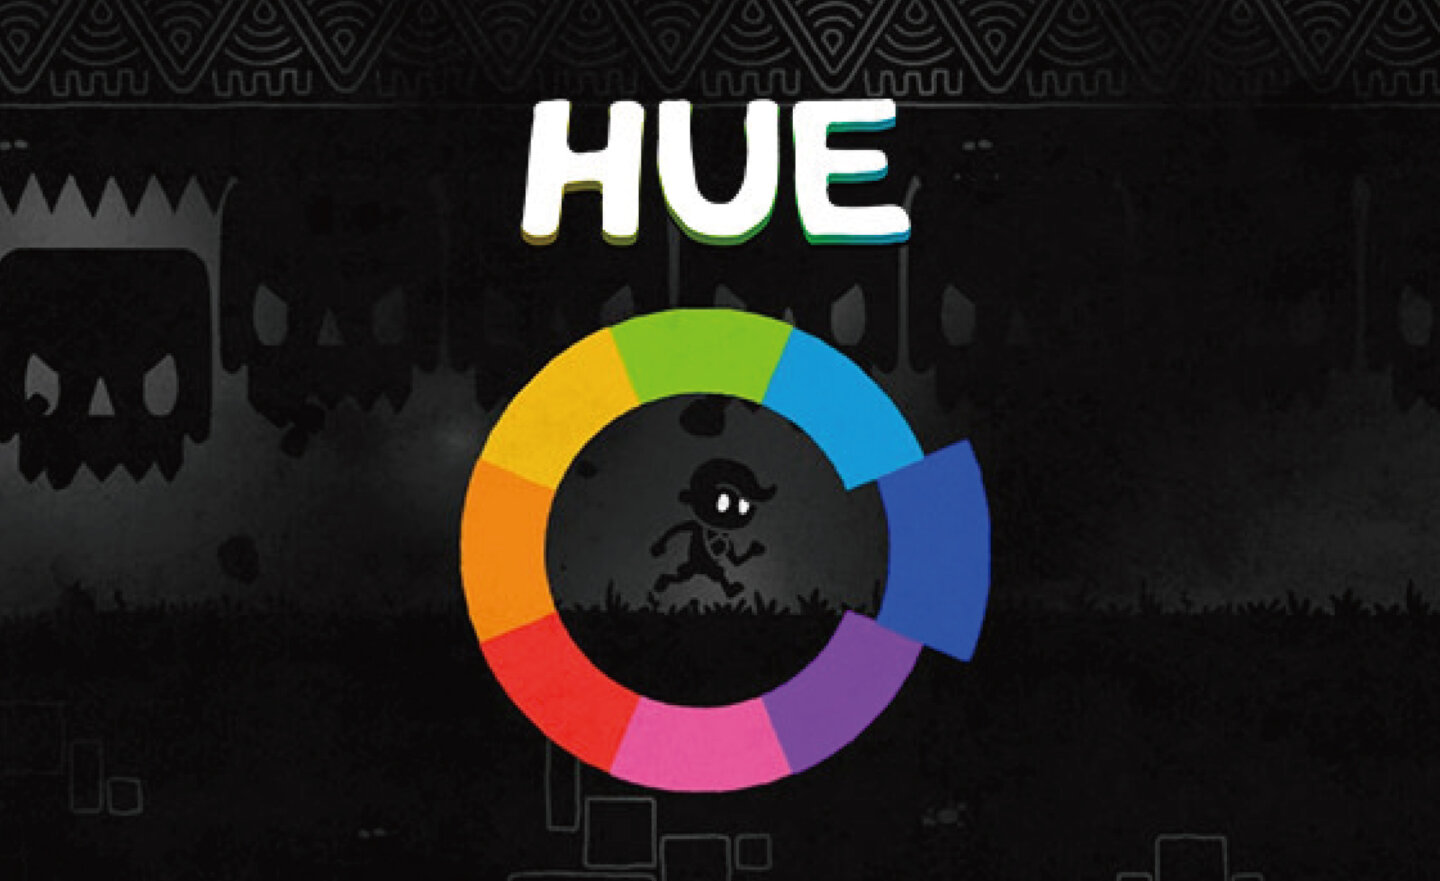 【限時免費】登入 Steam 領取《Hue》色彩解謎獨立遊戲，6 月 9 日凌晨 1:00 前永久保留